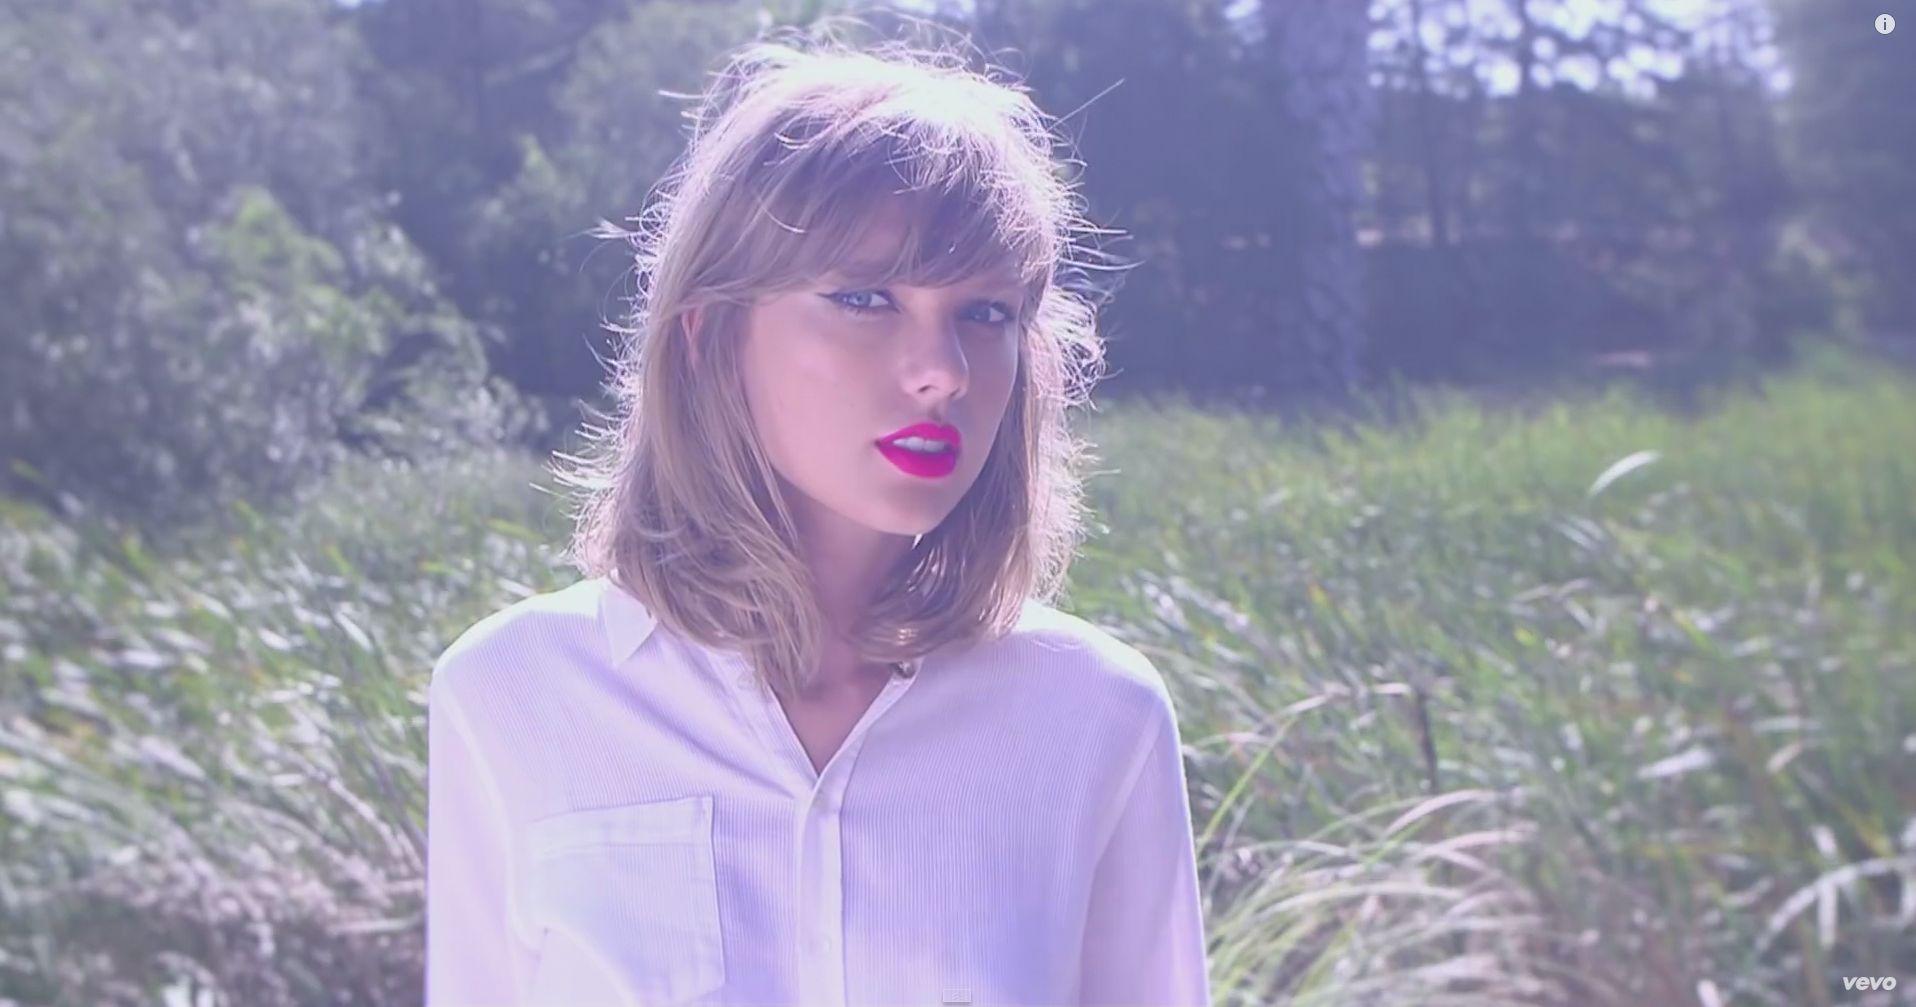 Taylor Swift in Red Dress HD desktop wallpaper High